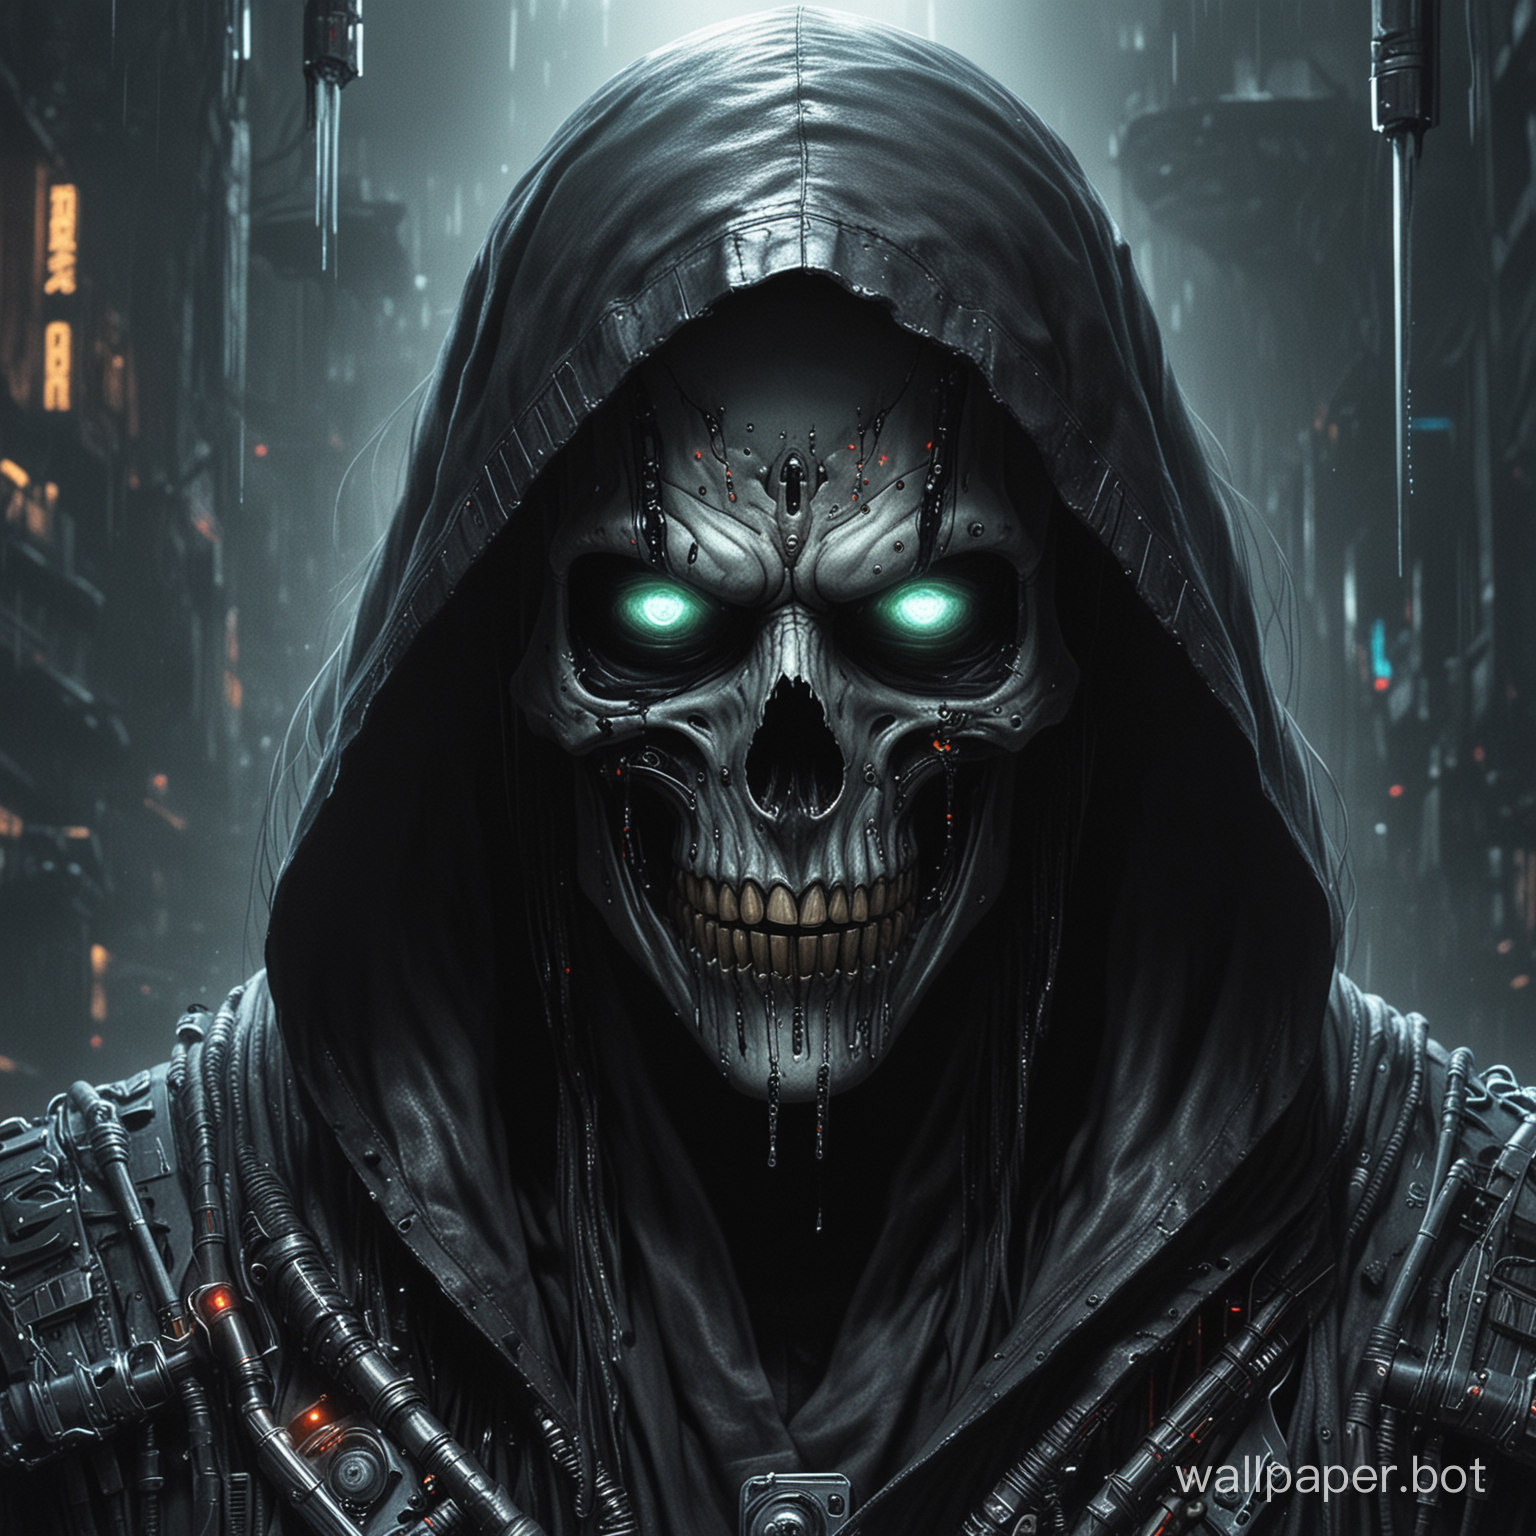 cyberpunk, grim reaper, large sicle,evil looking eyes,